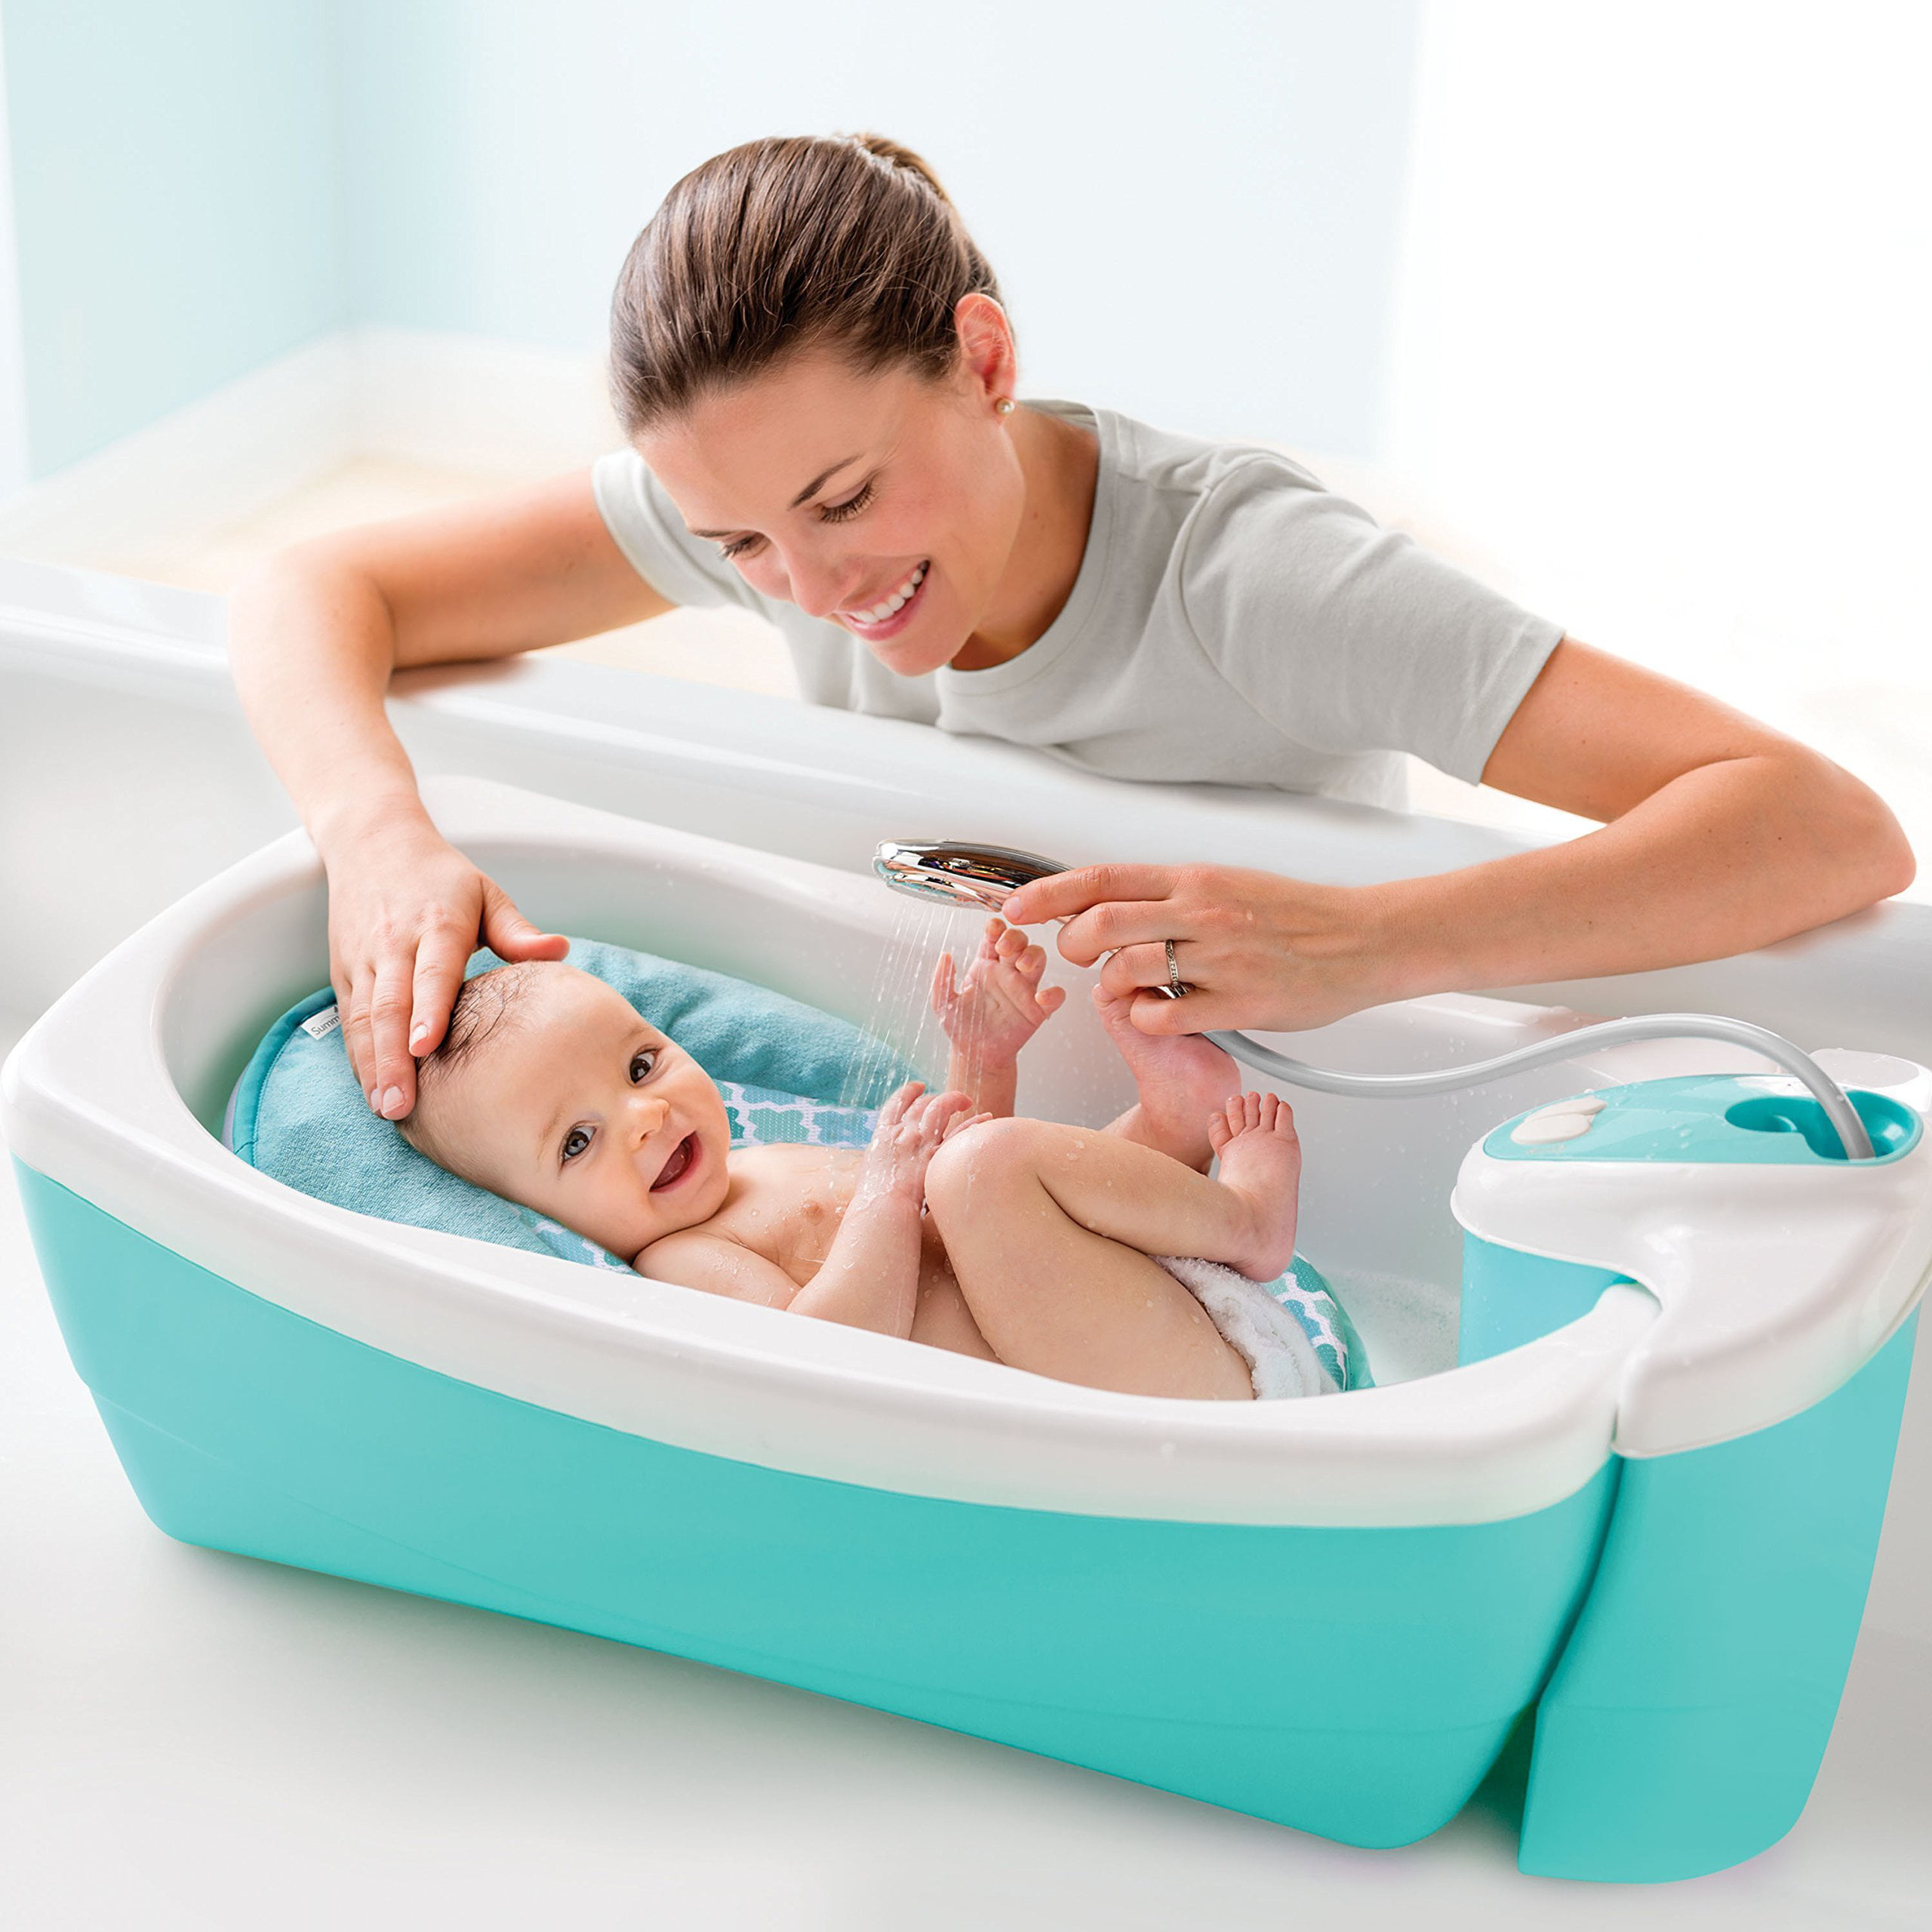 Ванна для новорожденных цена. Ванночка Summer Infant Foldaway. Ванночка Summer Infant. Ванночка для купания новорожденных. Ванна для купания новорожденных.